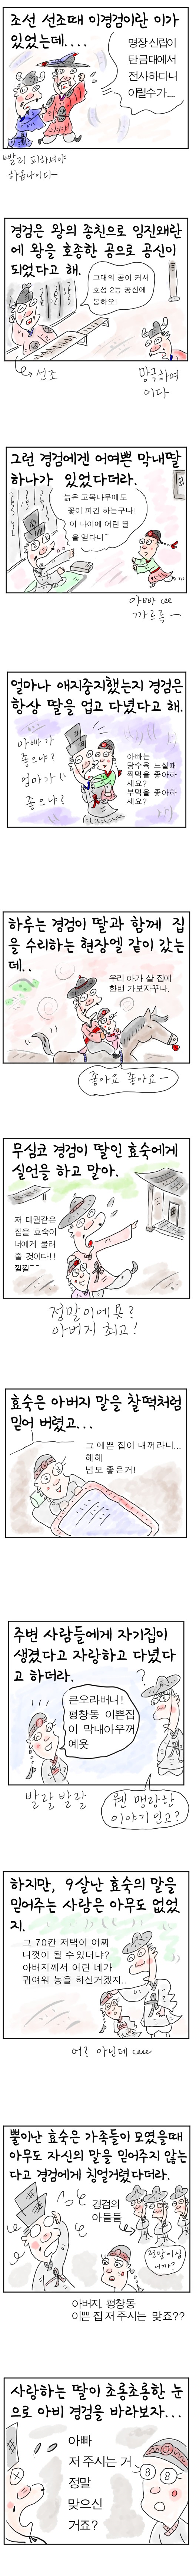 [역사툰] 史(사)람 이야기 16화: 딸바보 이경검
